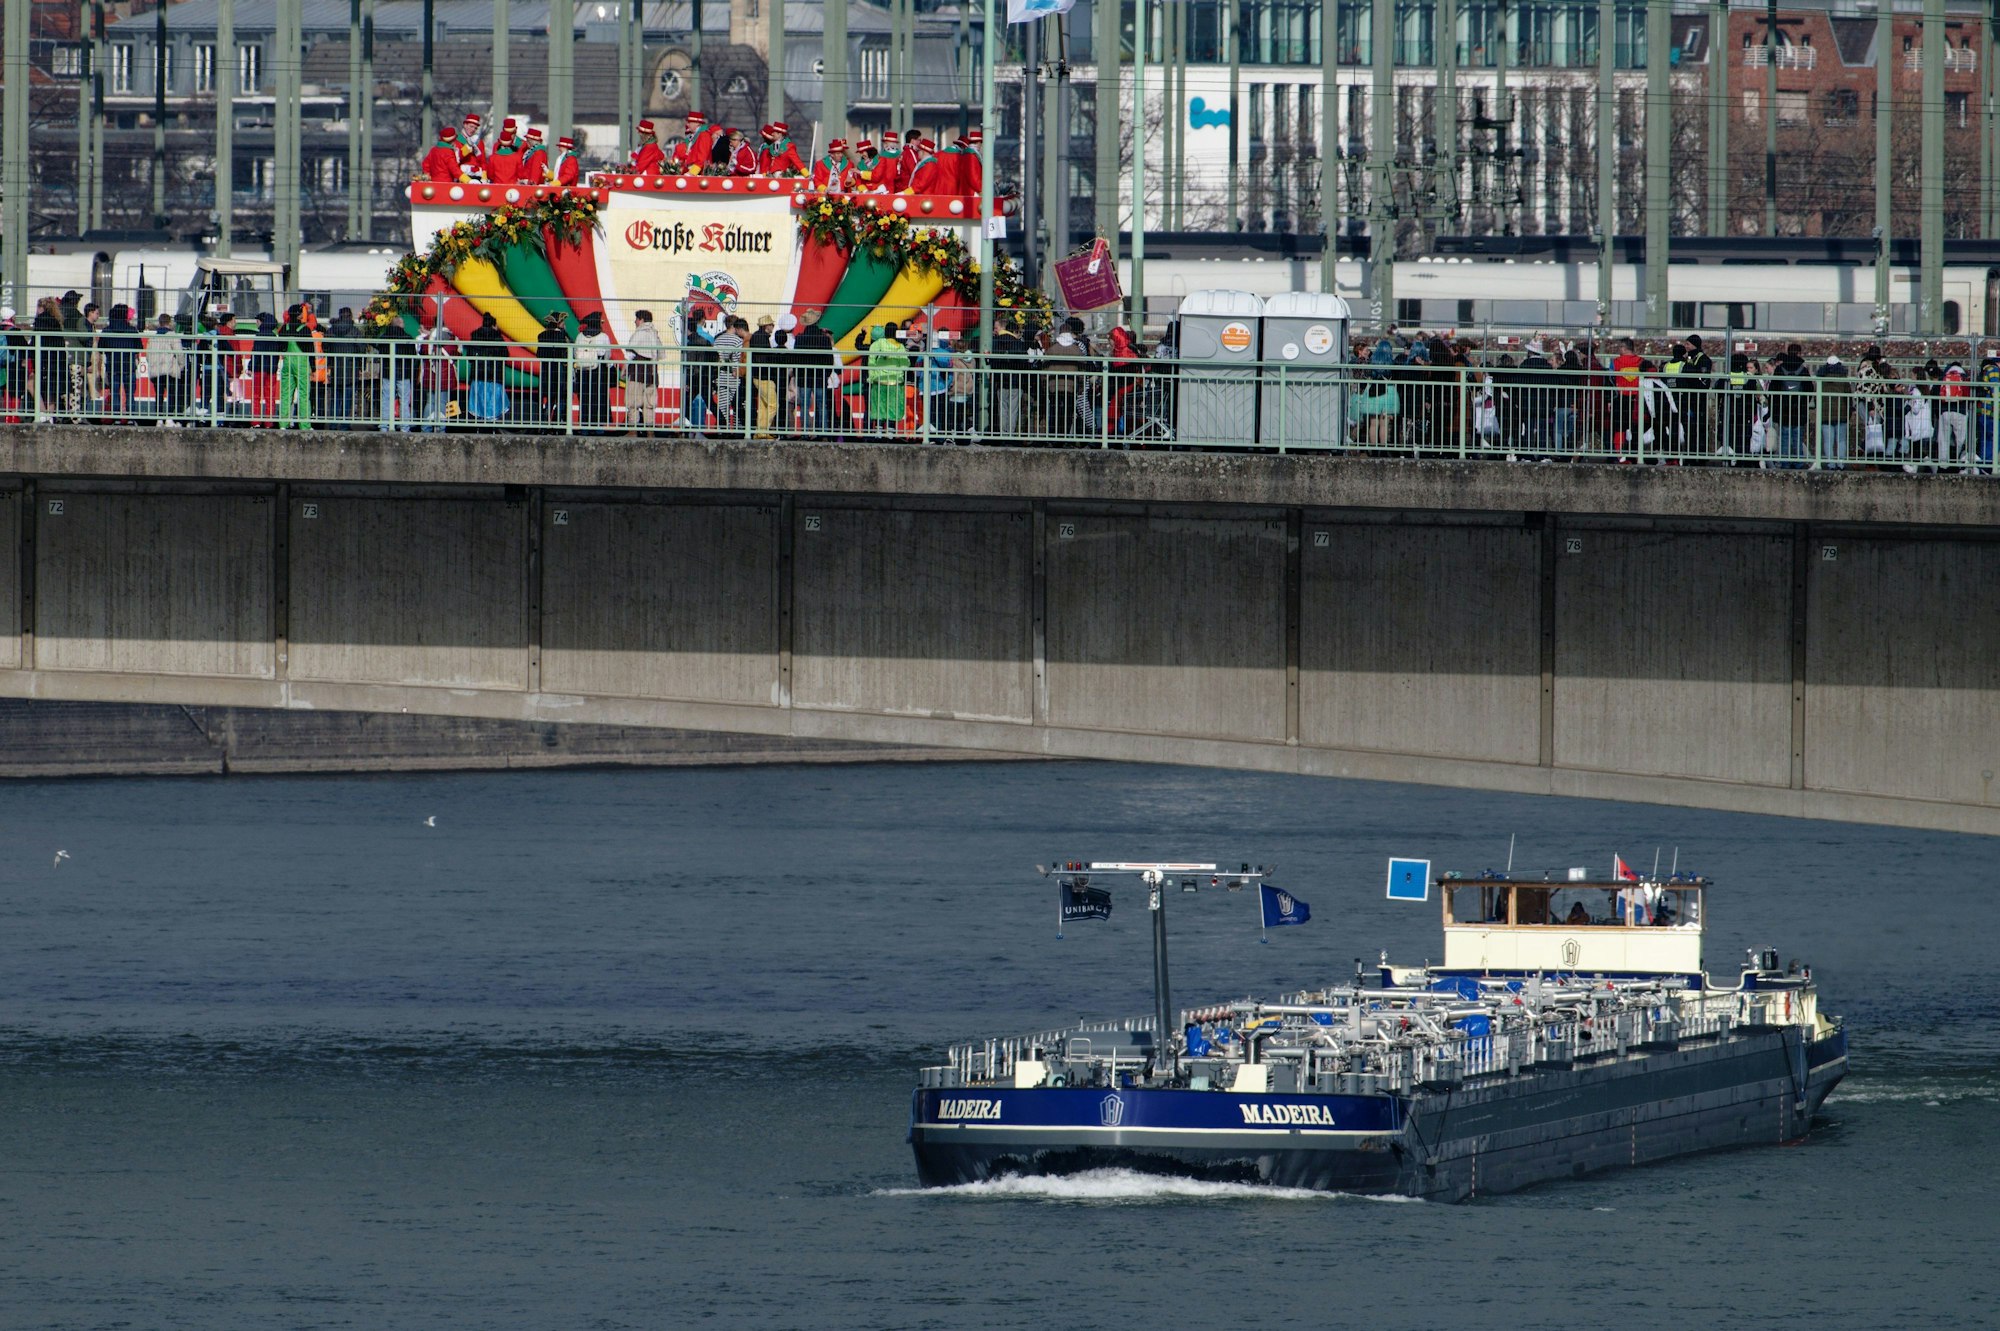 Ein Binnenschiff fährt unter der Deutzer Brücke entlang, oben ist ein Festwagen der Karnevalsgesellschaft „Große Kölner“ zu sehen.